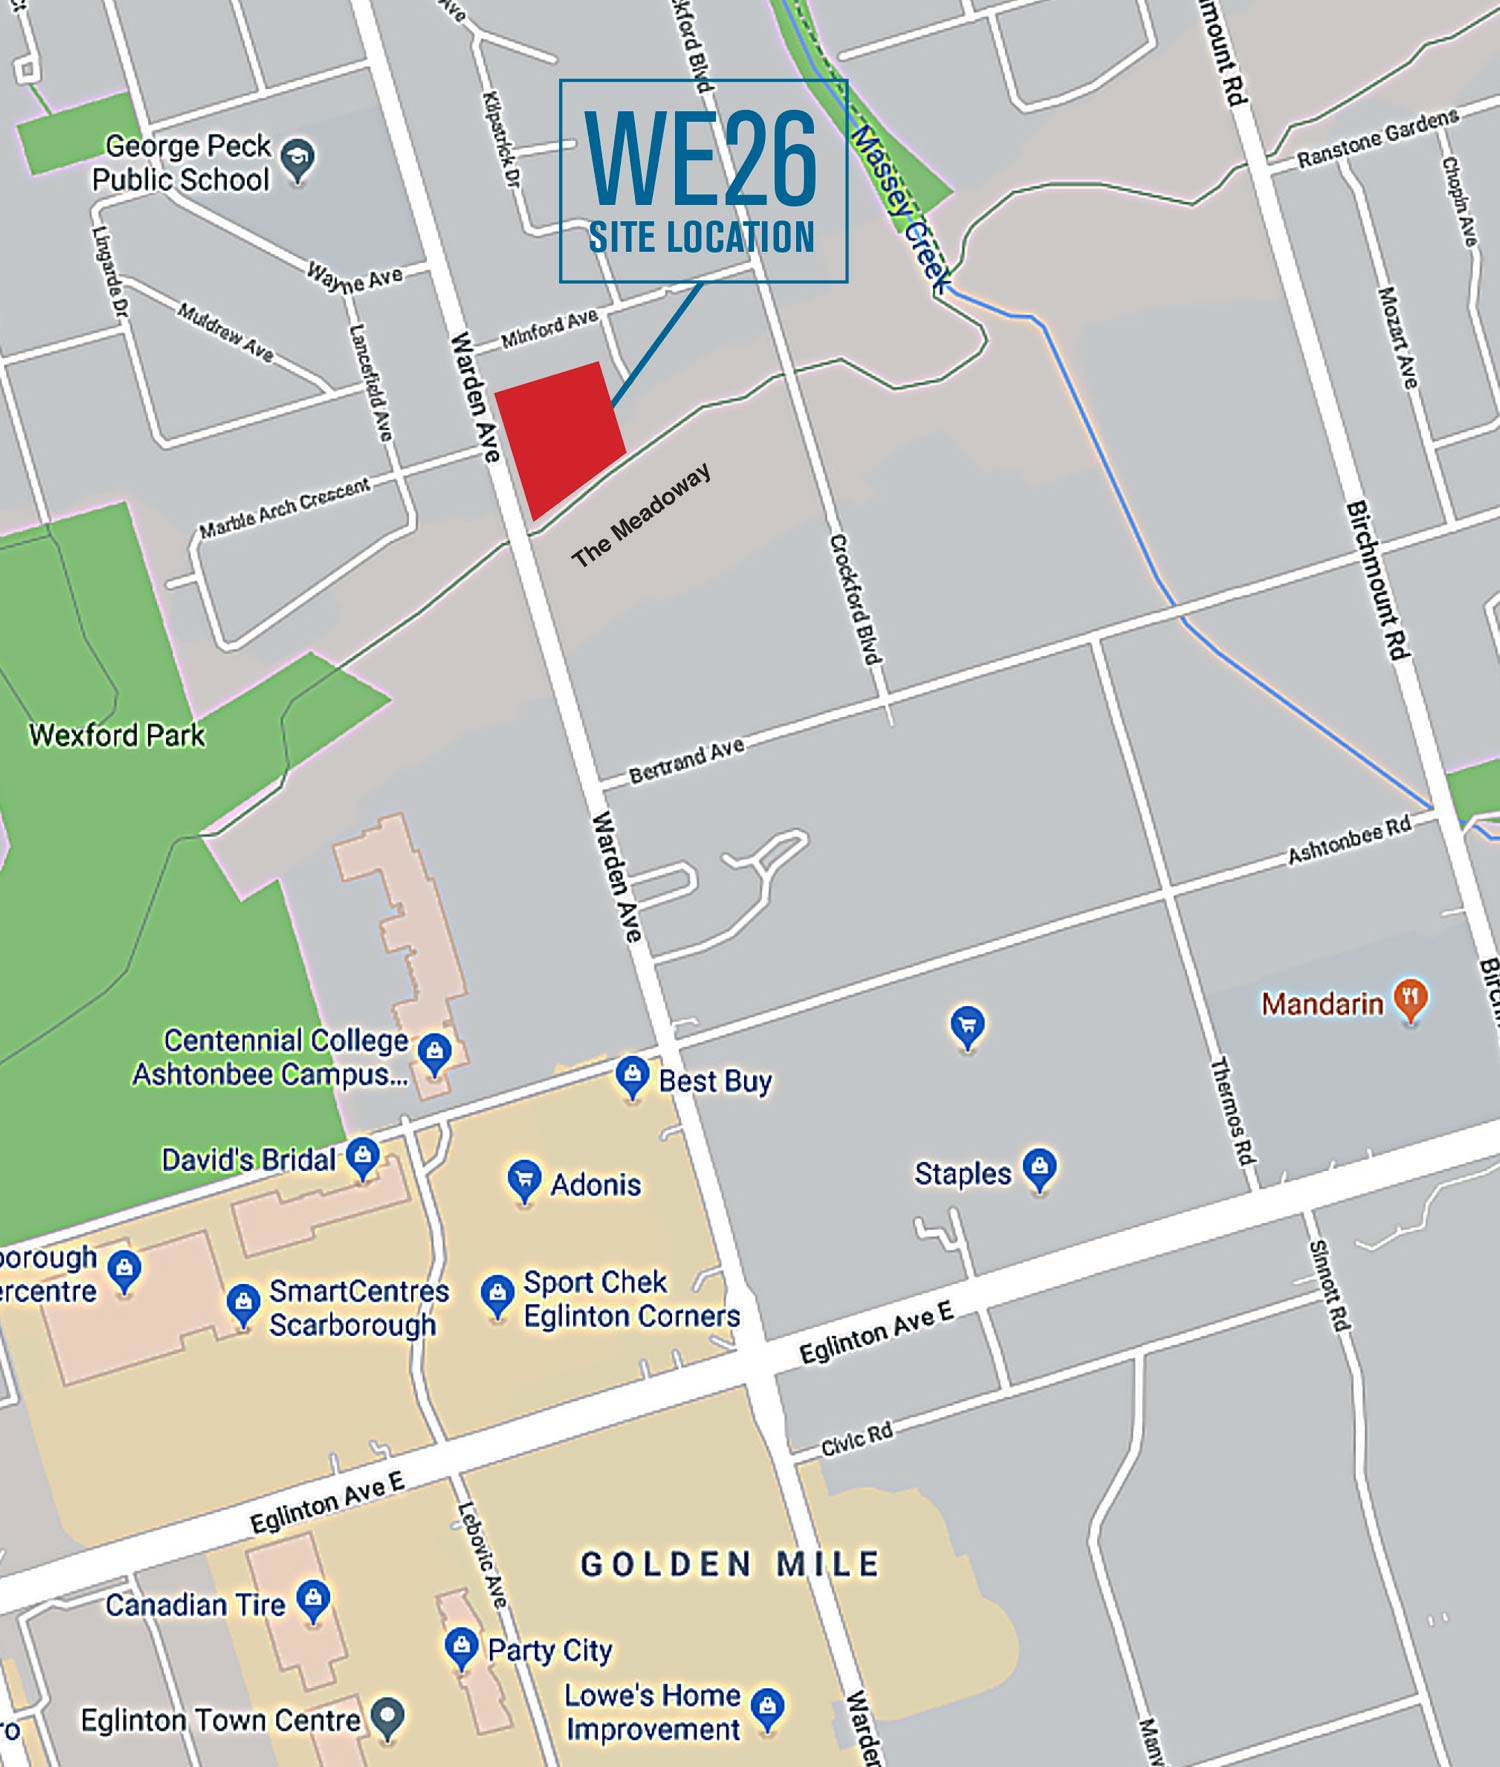 WE26 Site Location